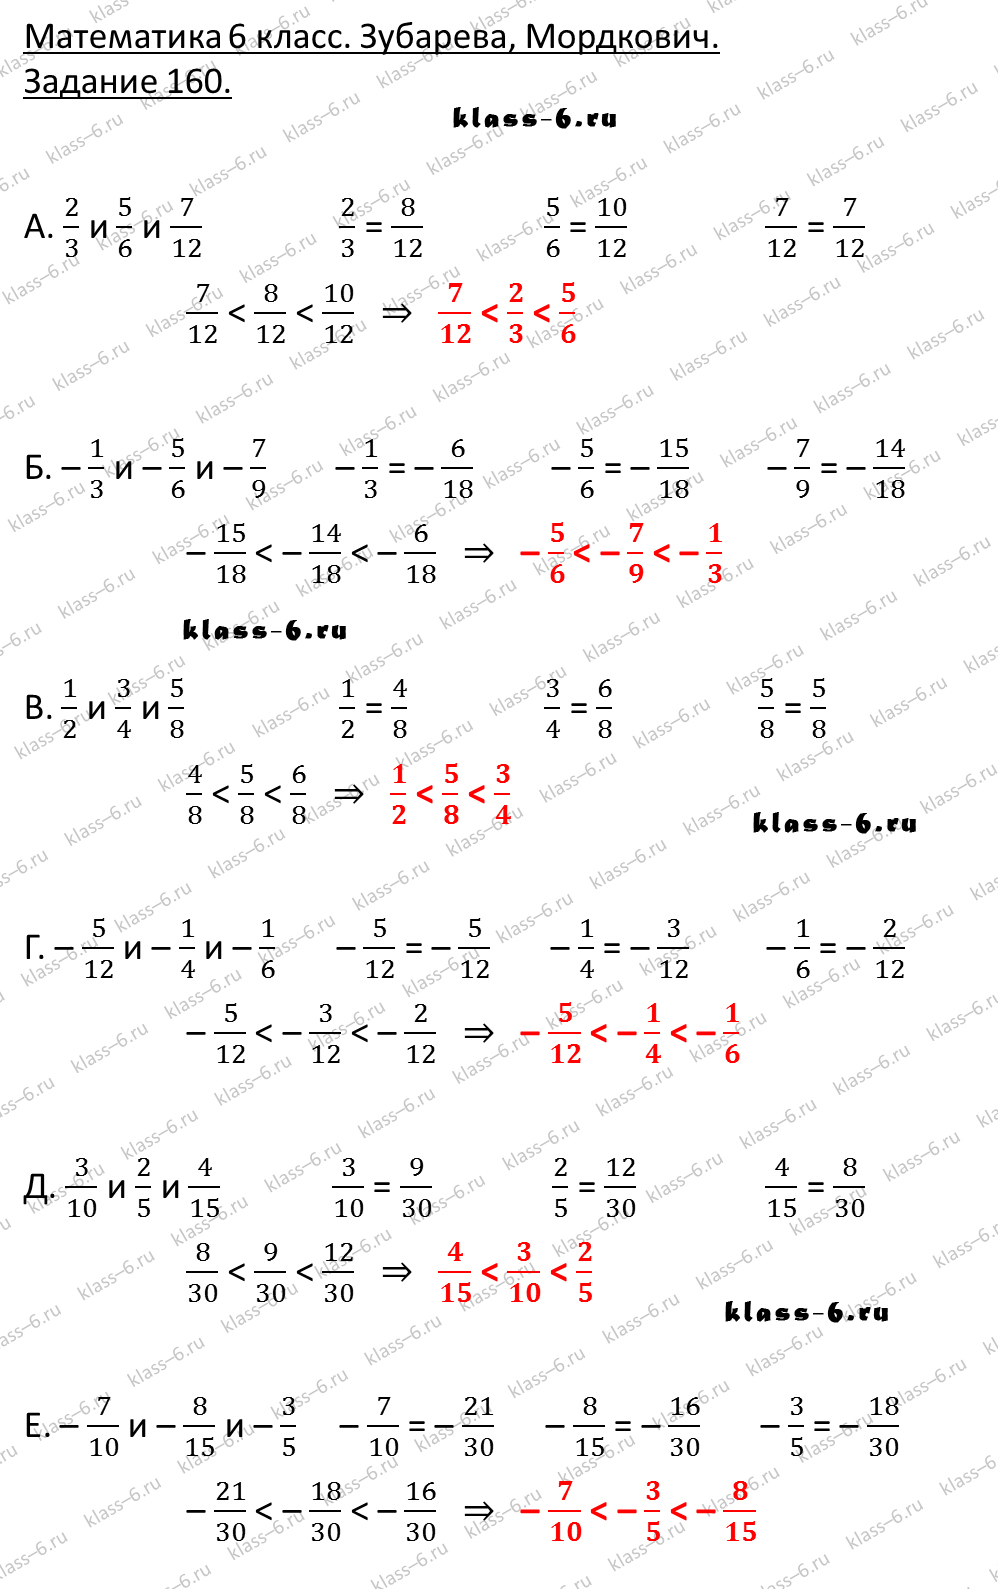 гдз математика Зубарева 6 класс ответ и подробное решение с объяснениями задачи 160